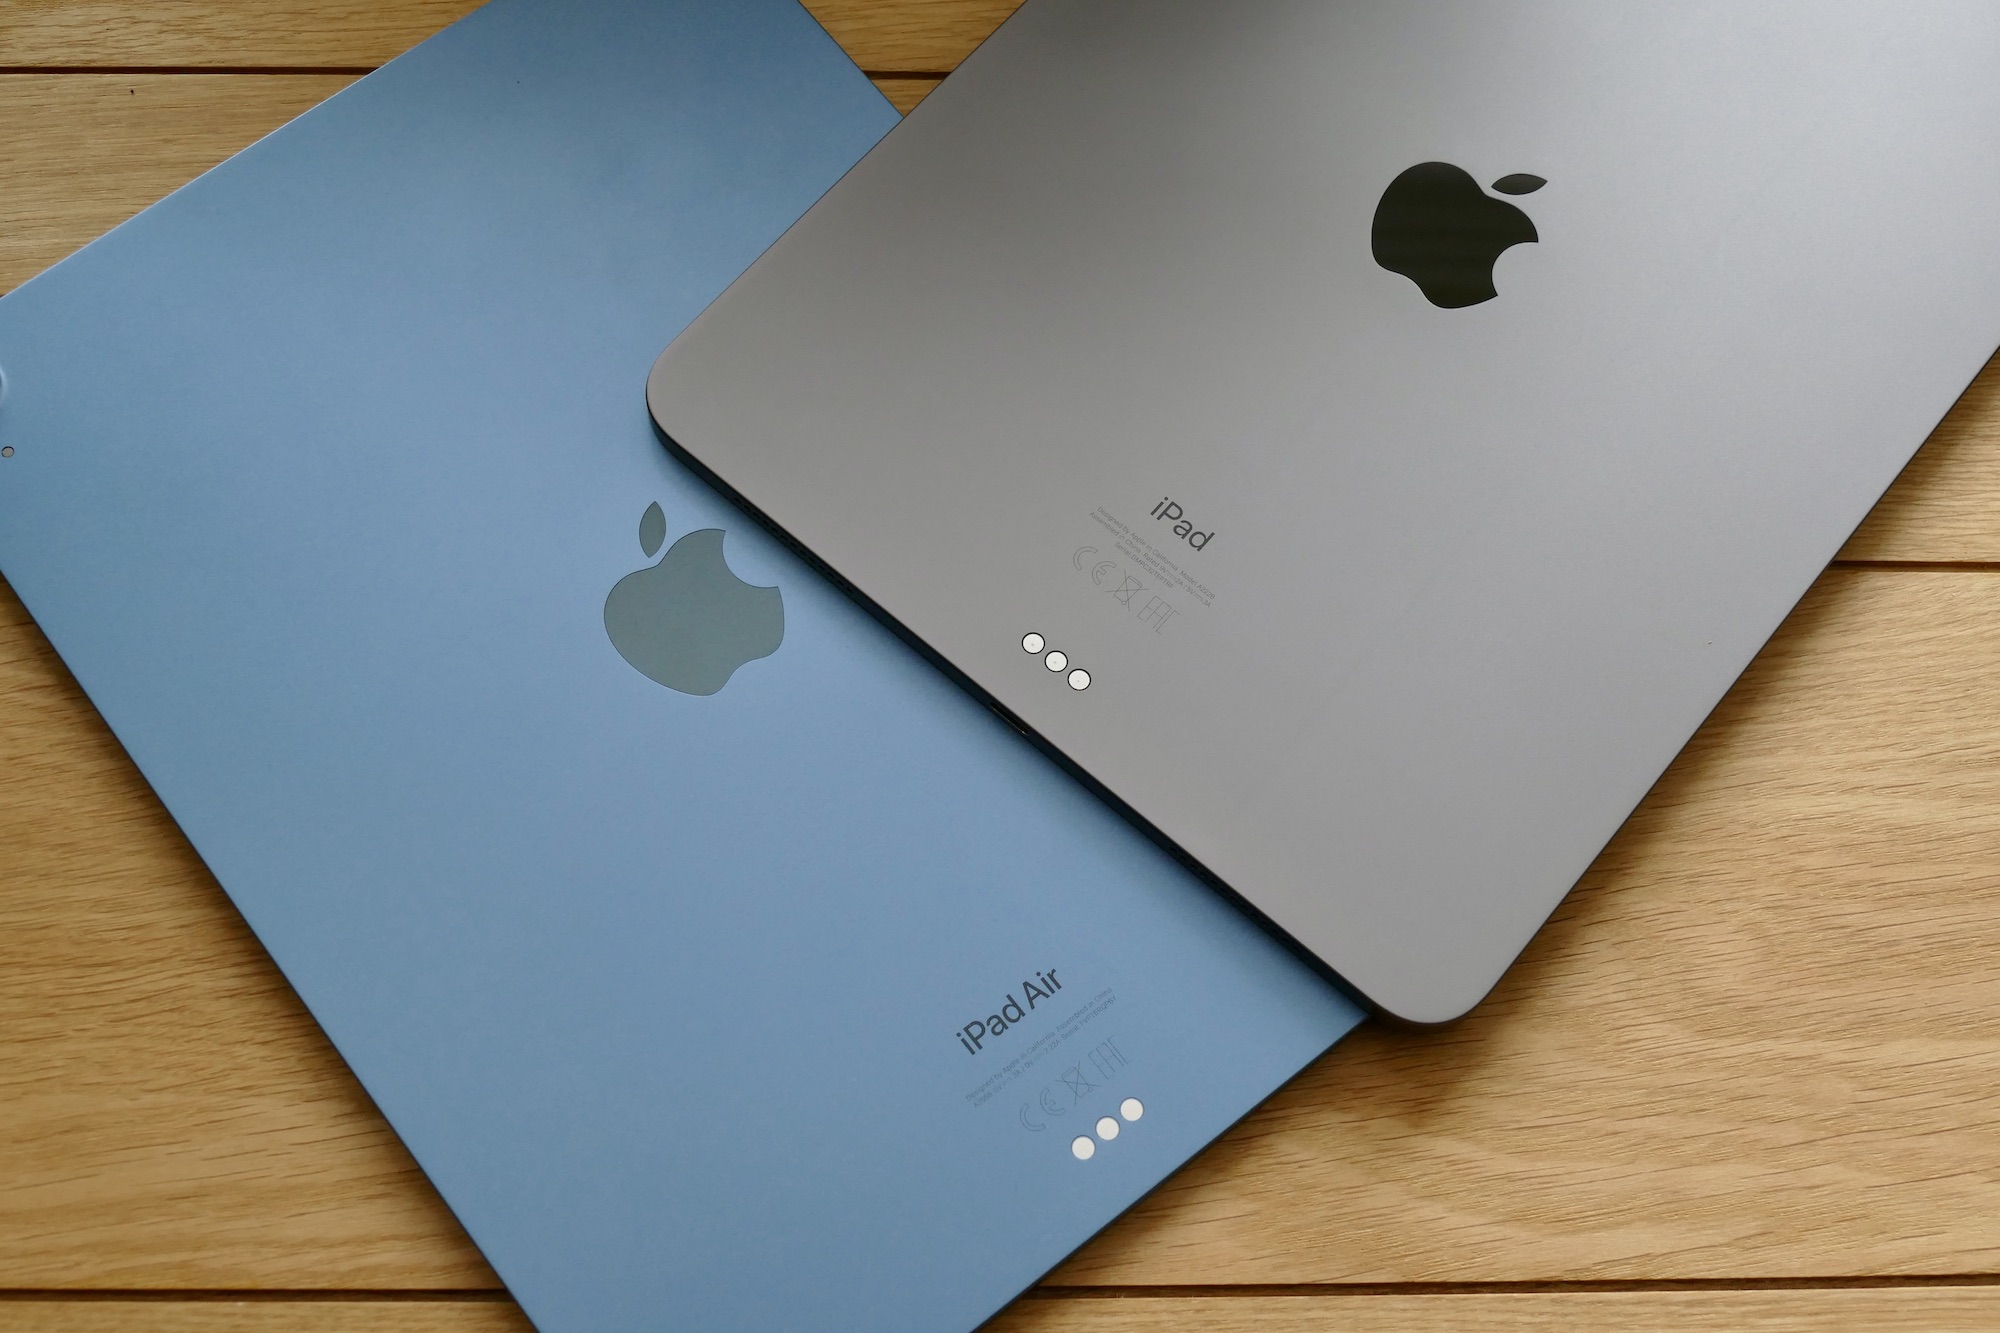 As costas do iPad Air e do iPad Pro da Apple, com os tablets colocados sobre uma mesa.